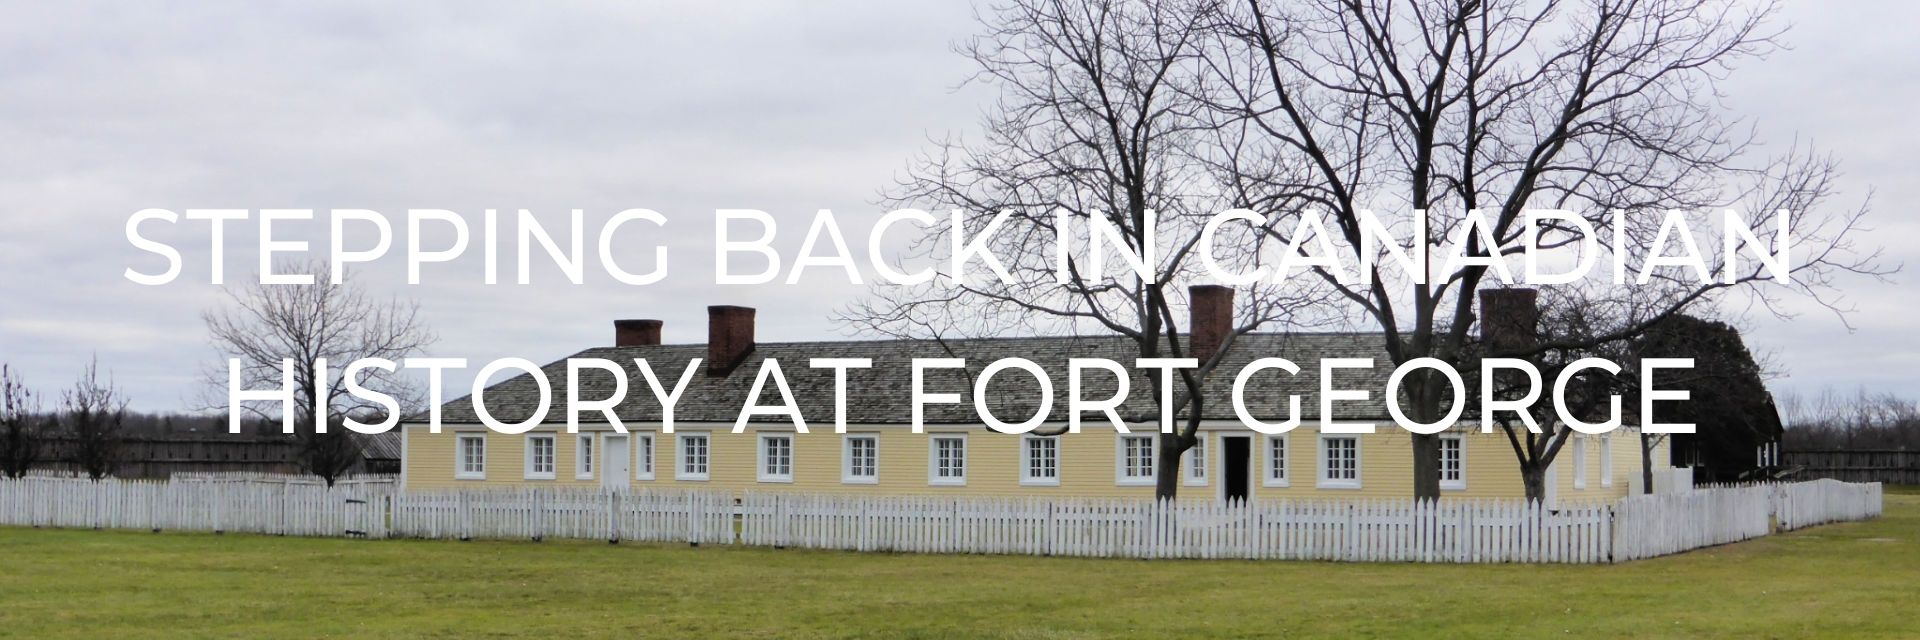 Visiting Fort George, Ontario Desktop Header